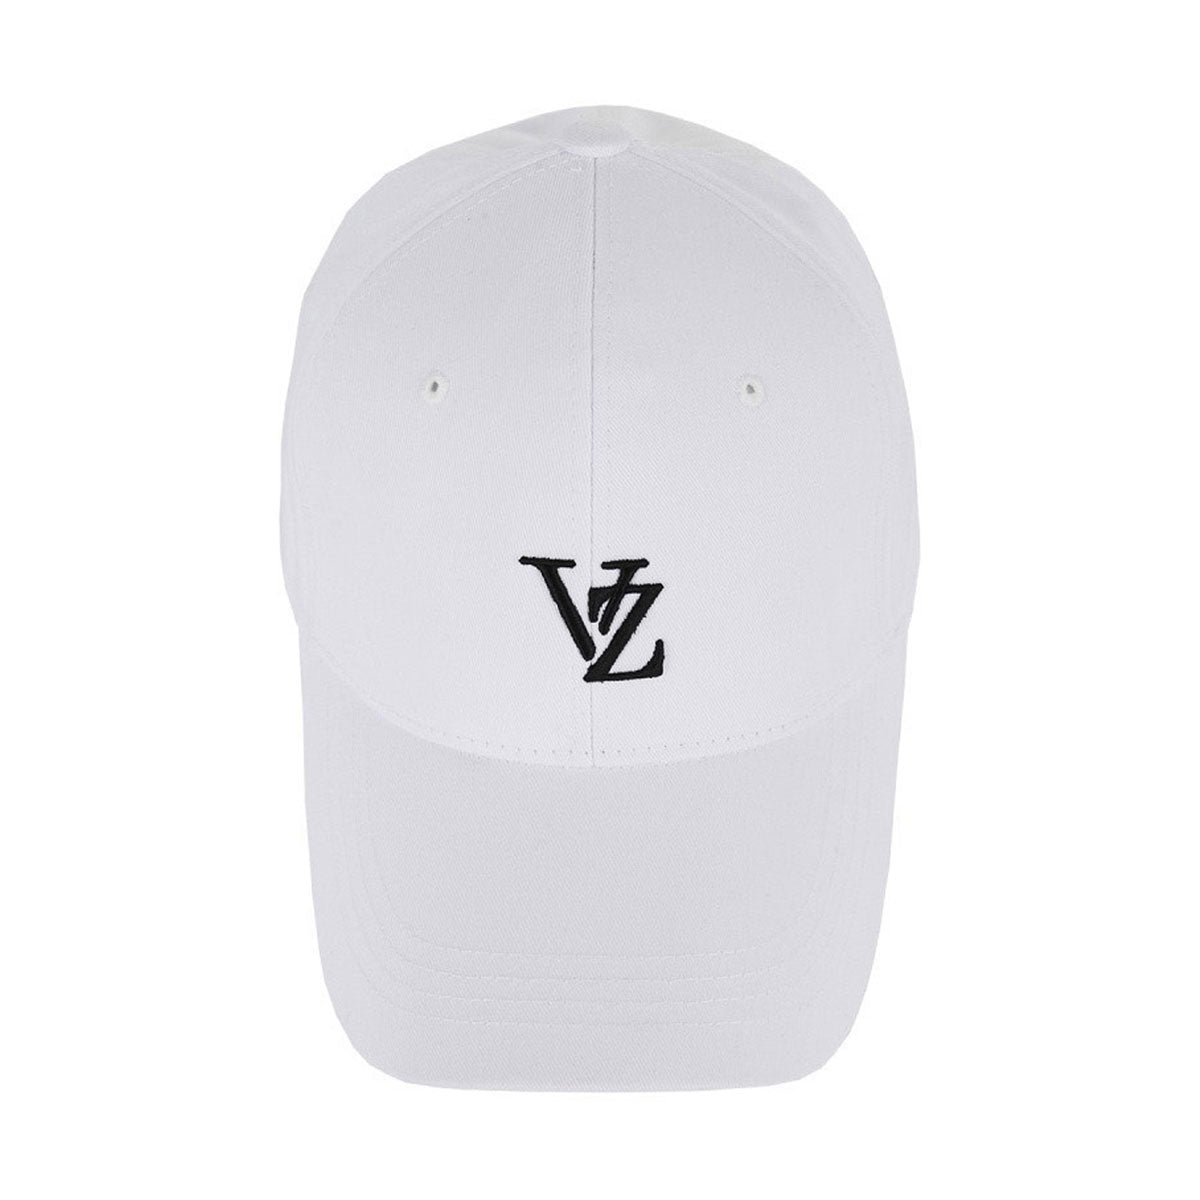 VARZAR - 3D MONOGRAM LOGO OVER FIT BALL CAP WHITE【VZR4-0002】